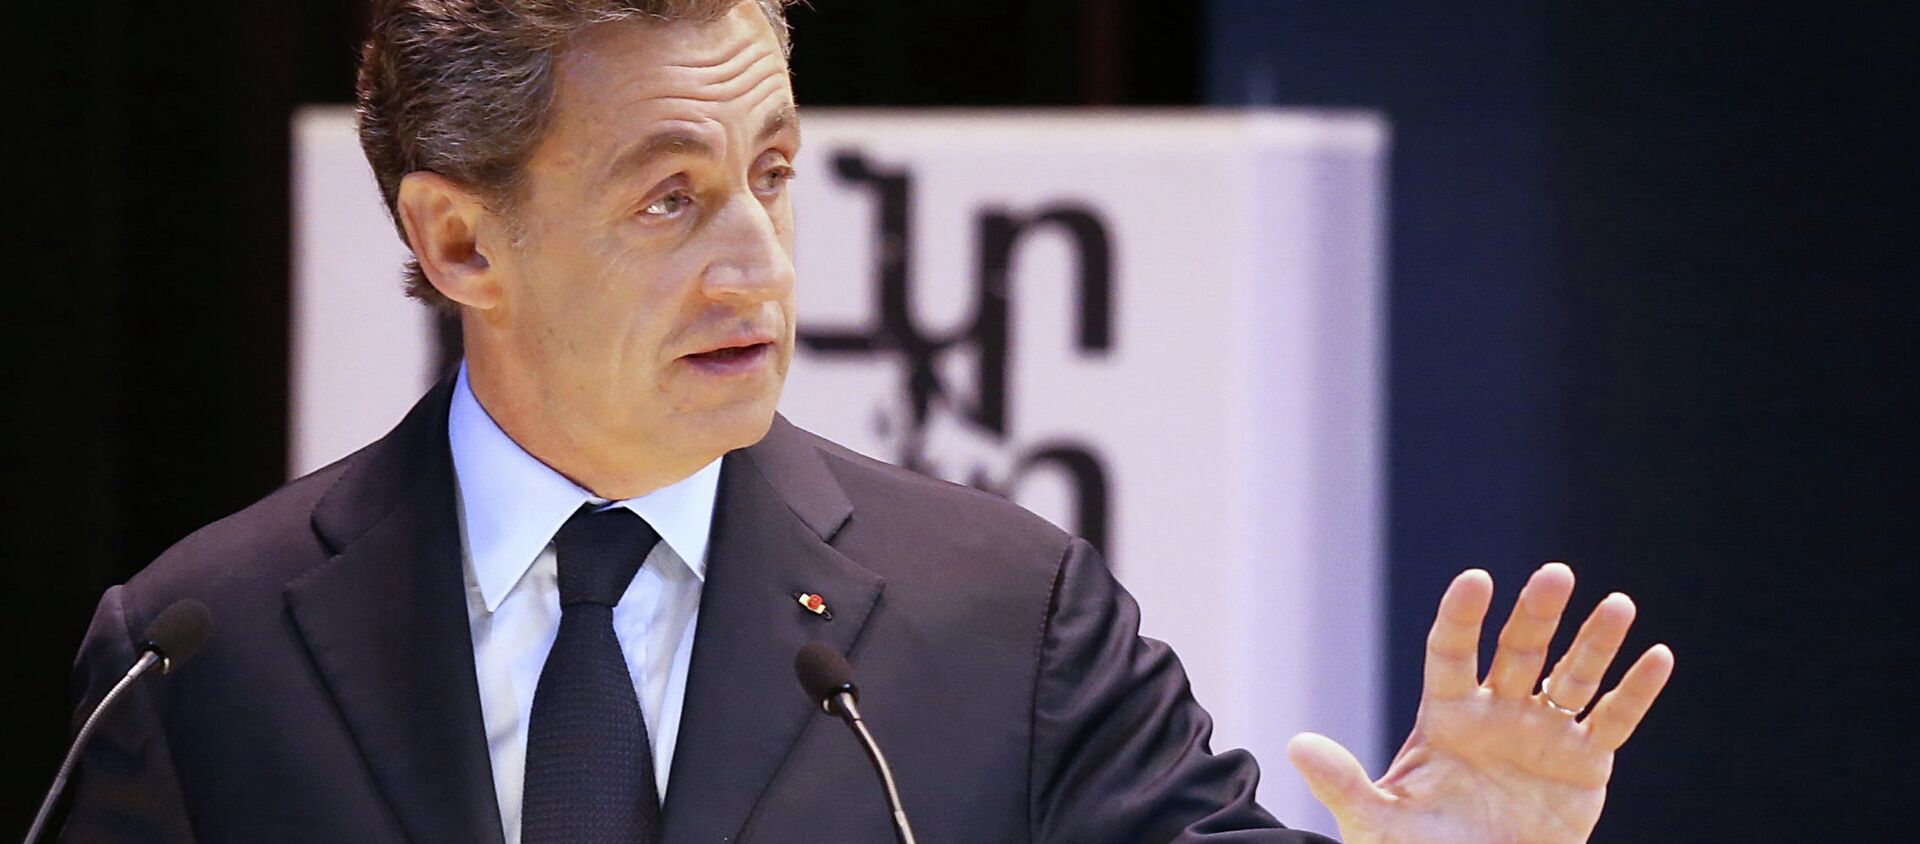 Архивное фото экс-президента Франции Николя Саркози - Sputnik Абхазия, 1920, 20.03.2018